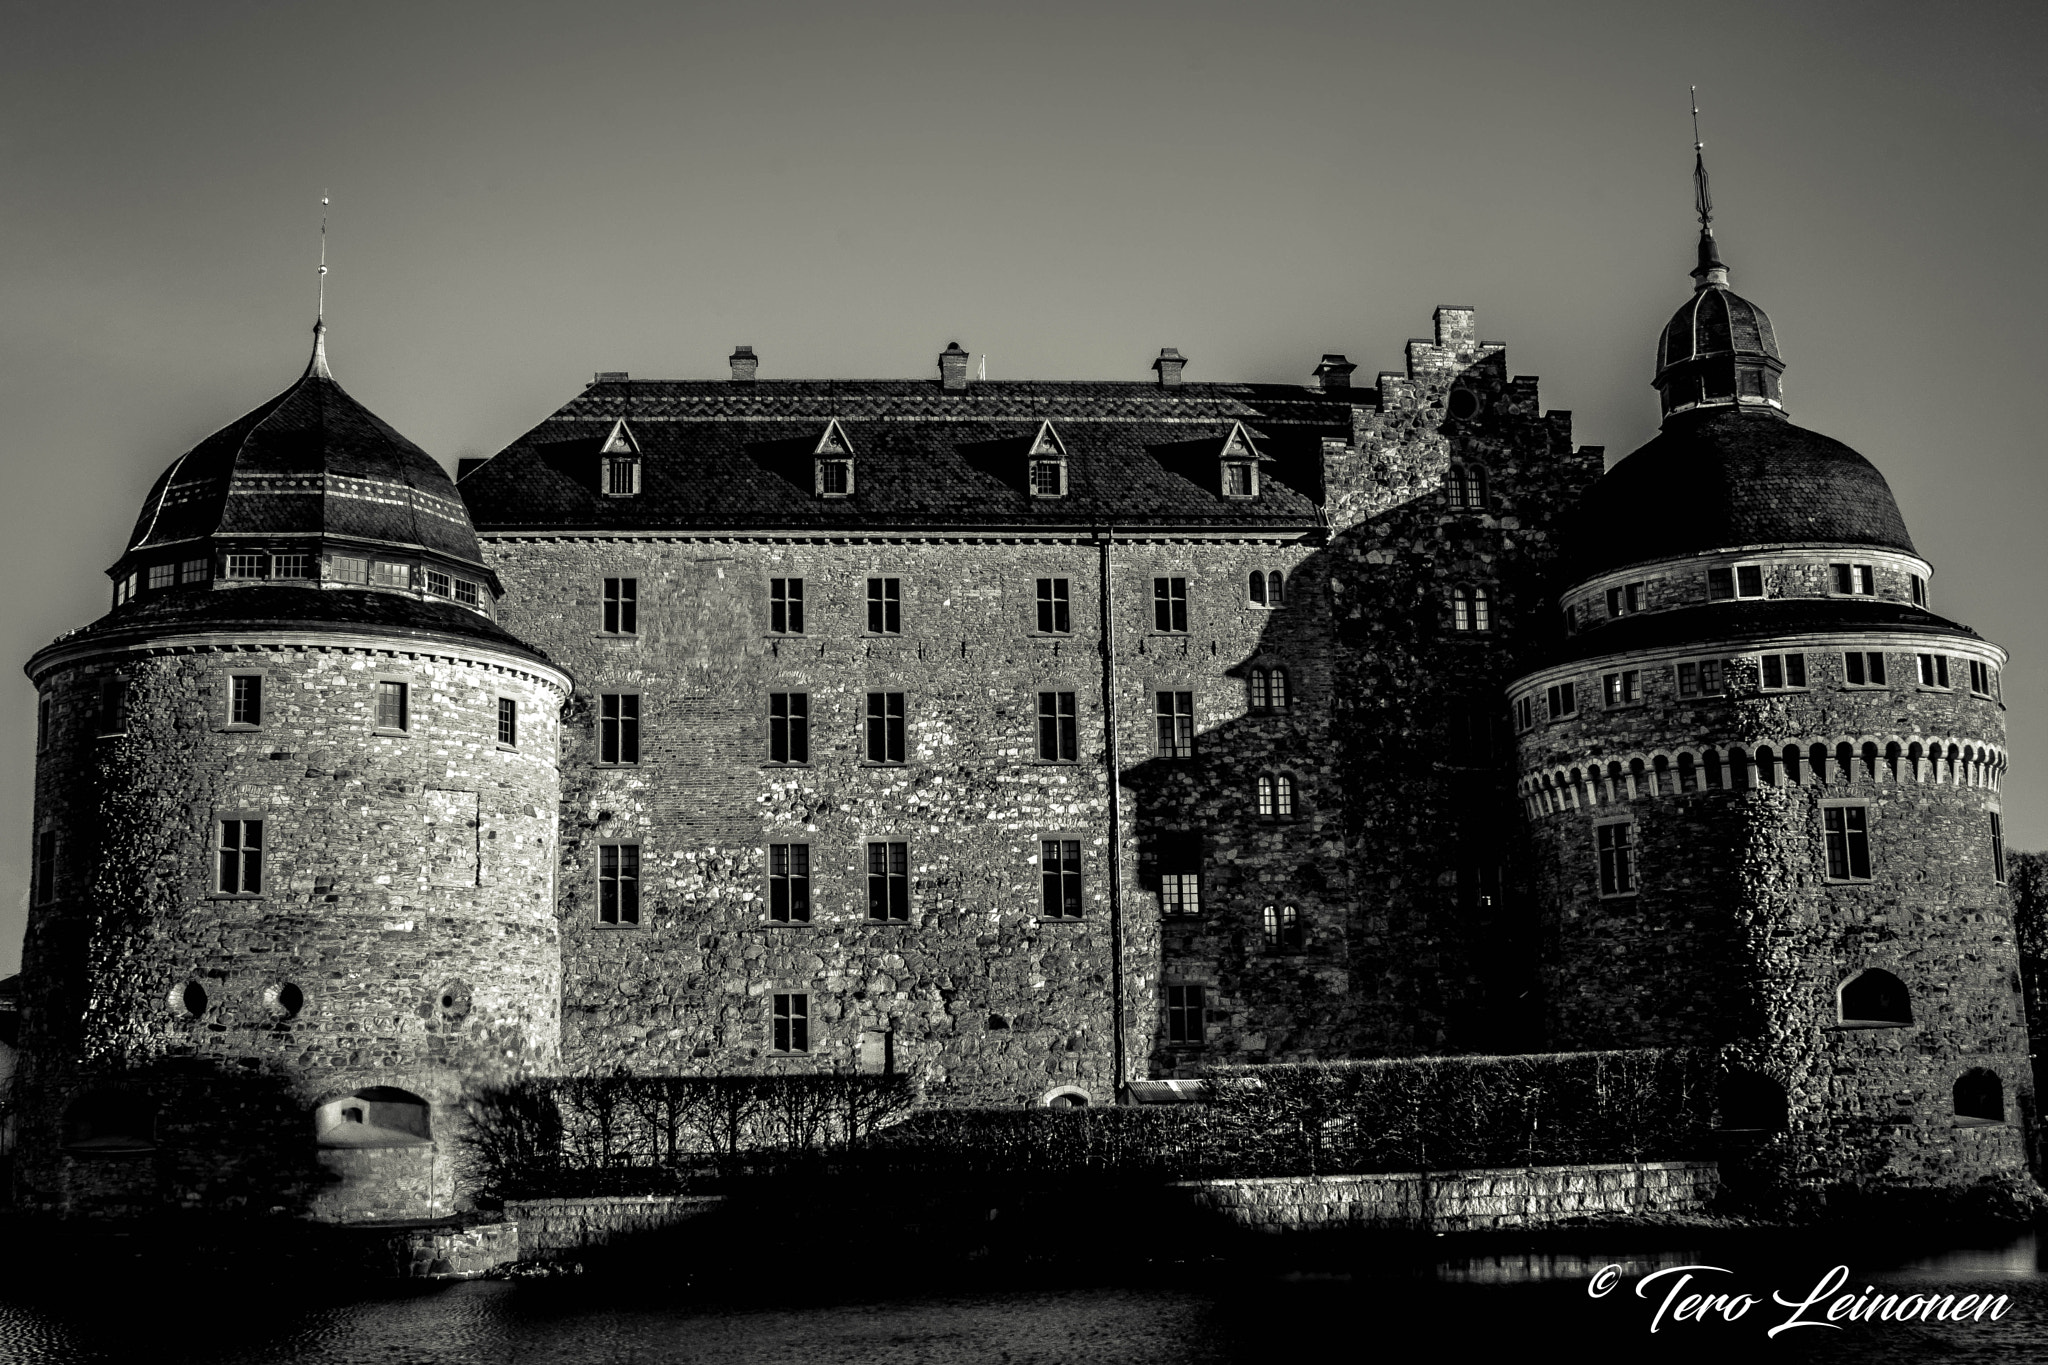 Minolta AF 24mm F2.8 sample photo. Örebro castle photography